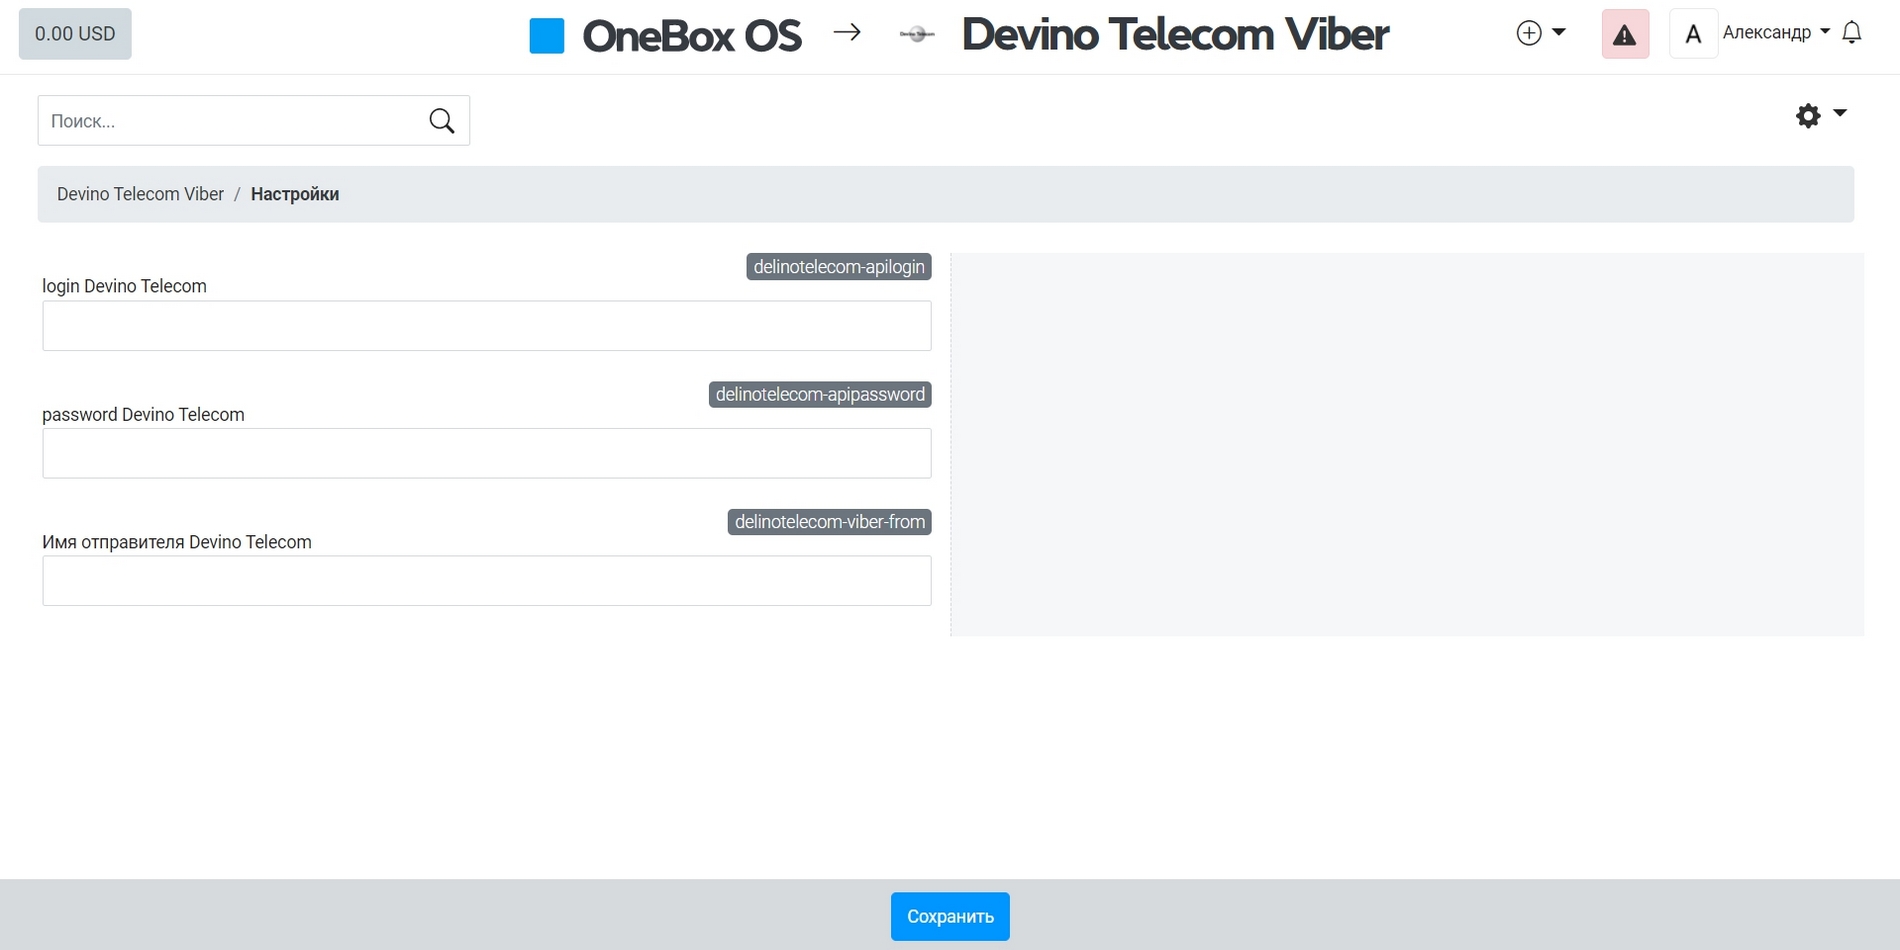 Application Devino Telecom Viber